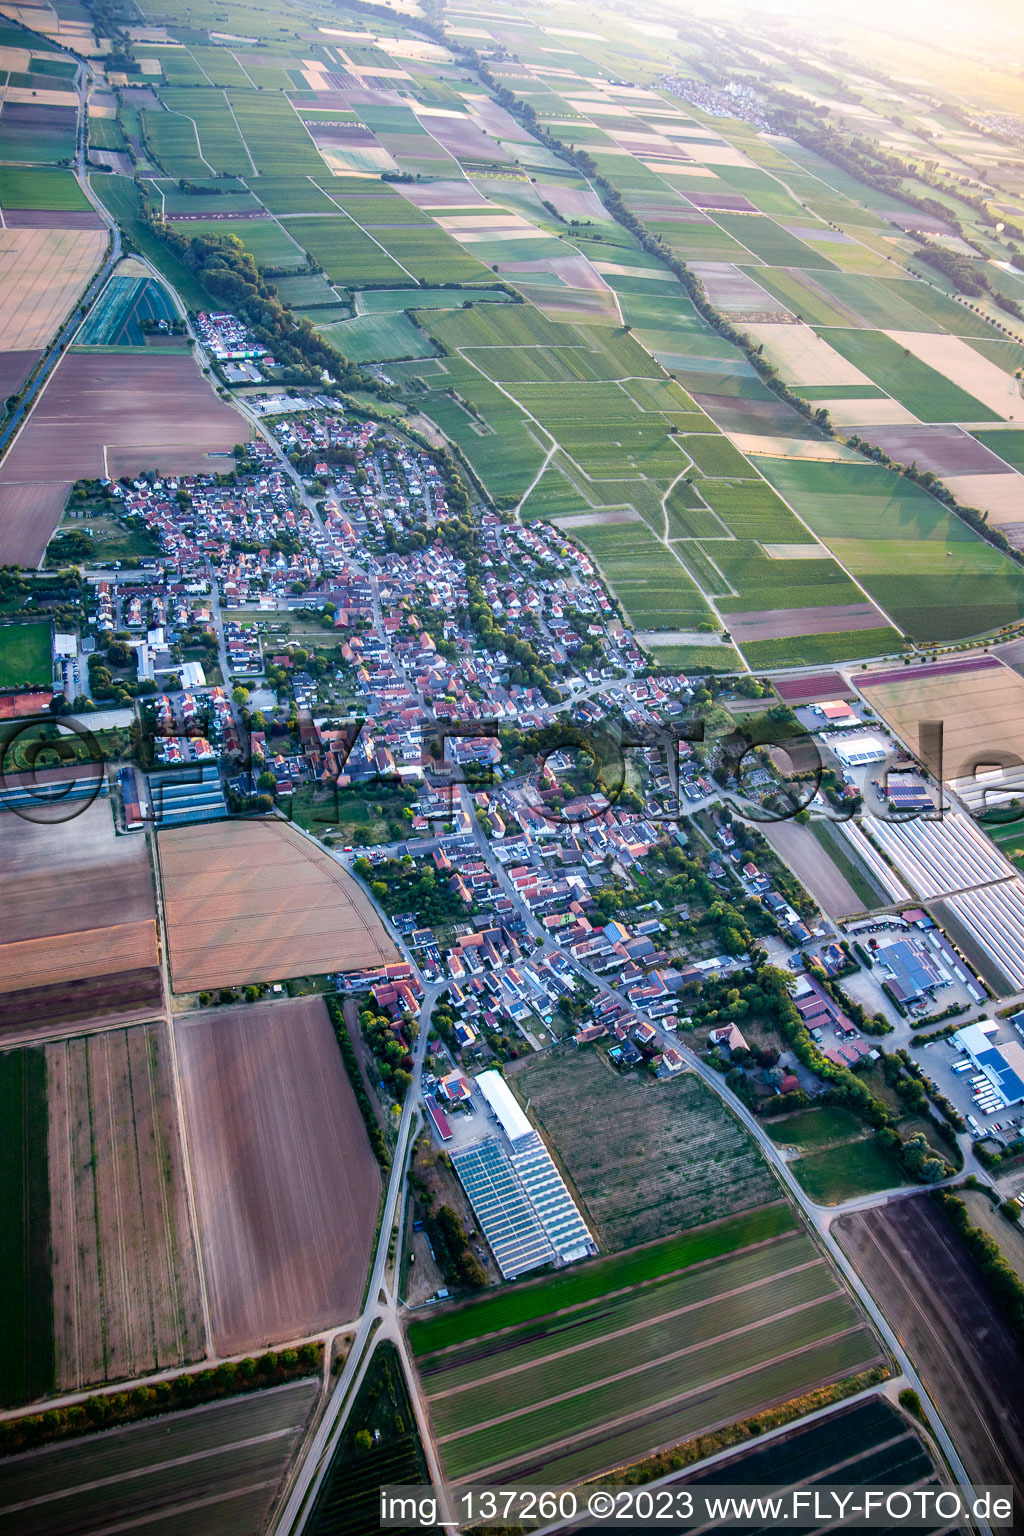 Luftbild von Von Osten in Weingarten im Bundesland Rheinland-Pfalz, Deutschland